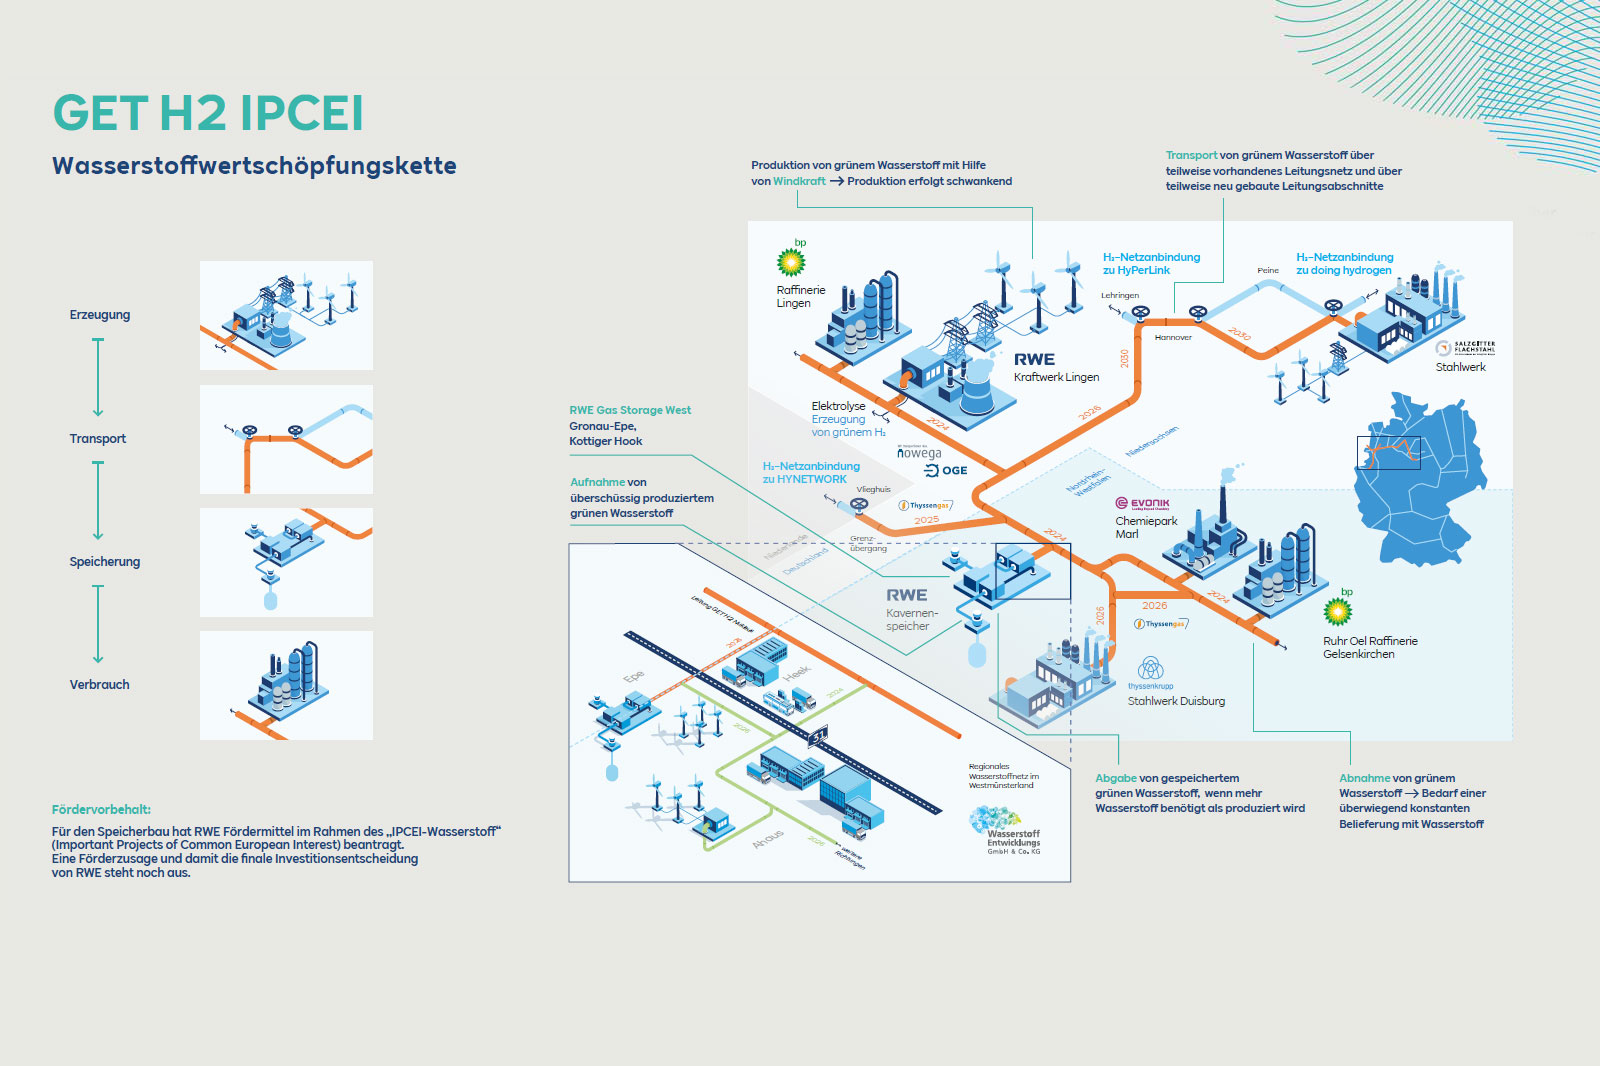 Infographic: GET H2 IPCEI – hydrogen value chain – Dialog event 9 June 2022 | Hydrogen RWE Gas Storage West GmbH